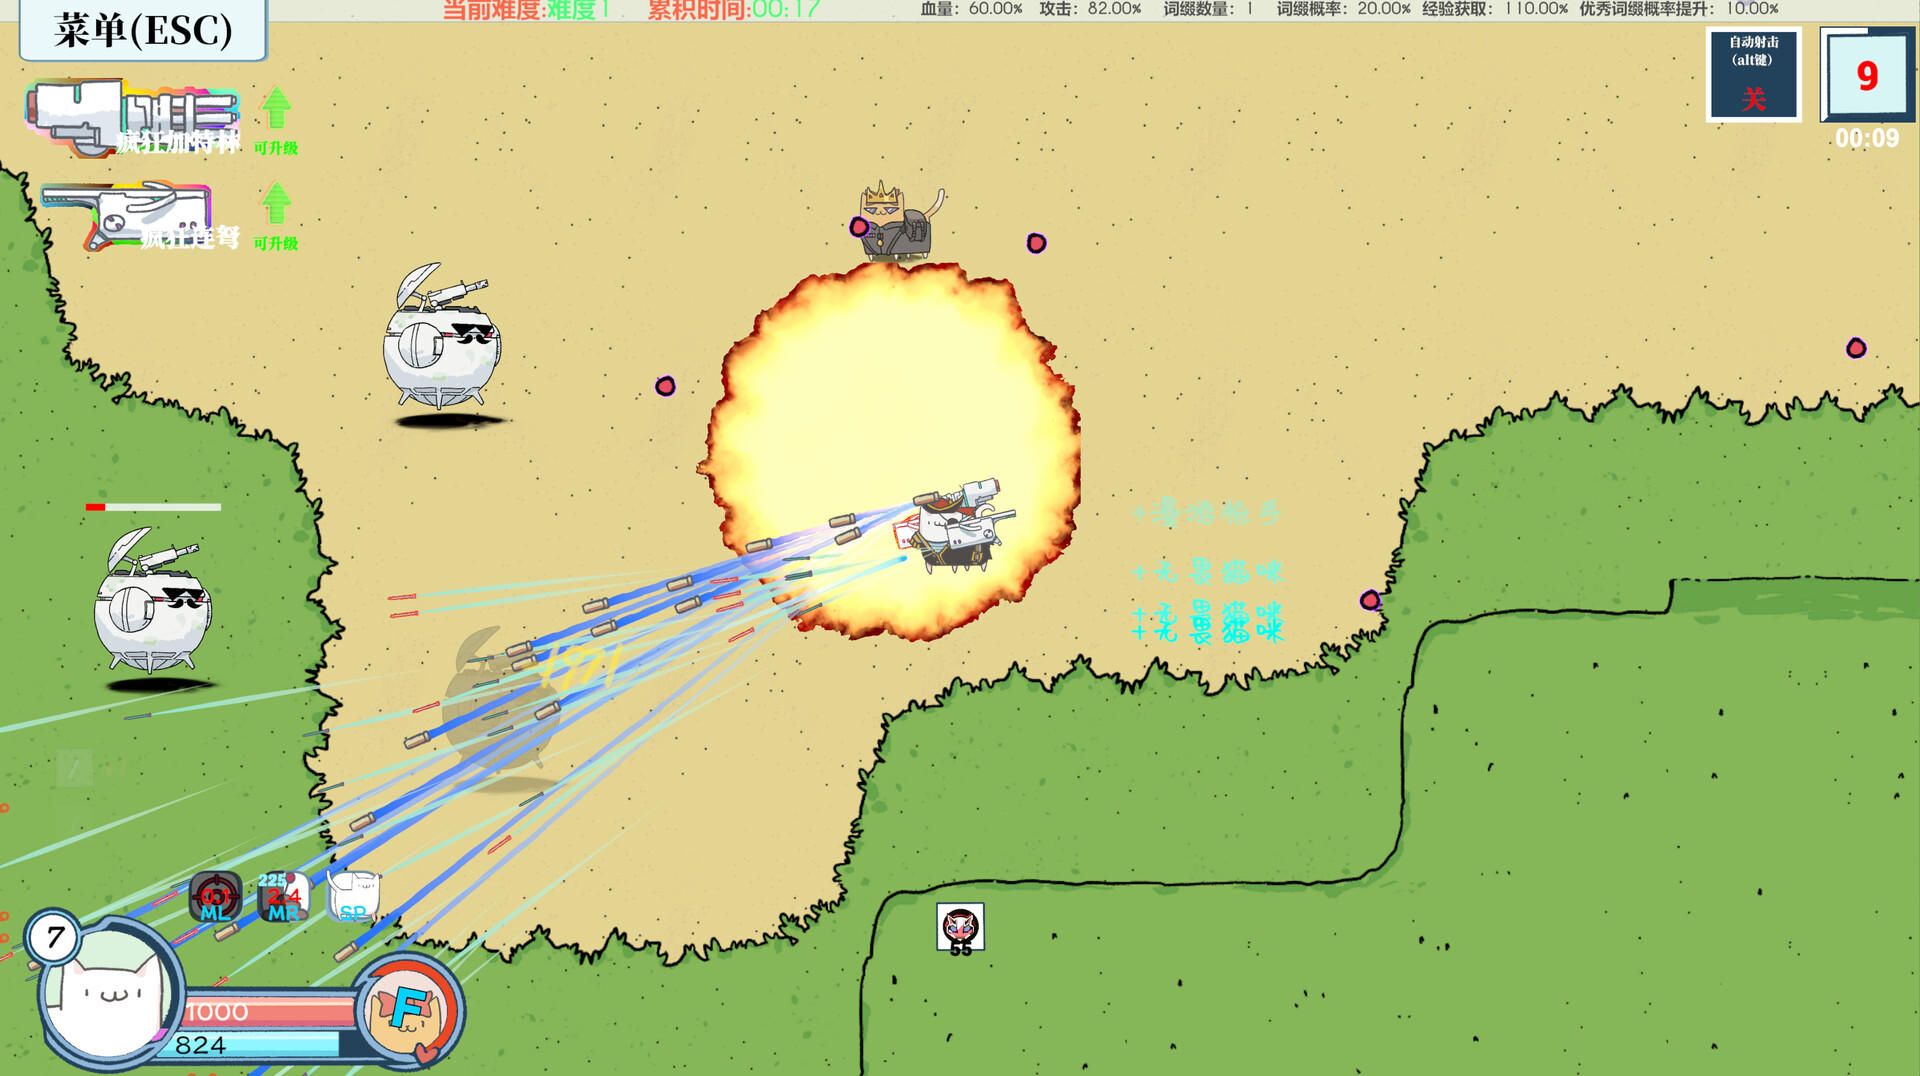 Screenshot 1 of Neko:Không đủ hỏa lực 